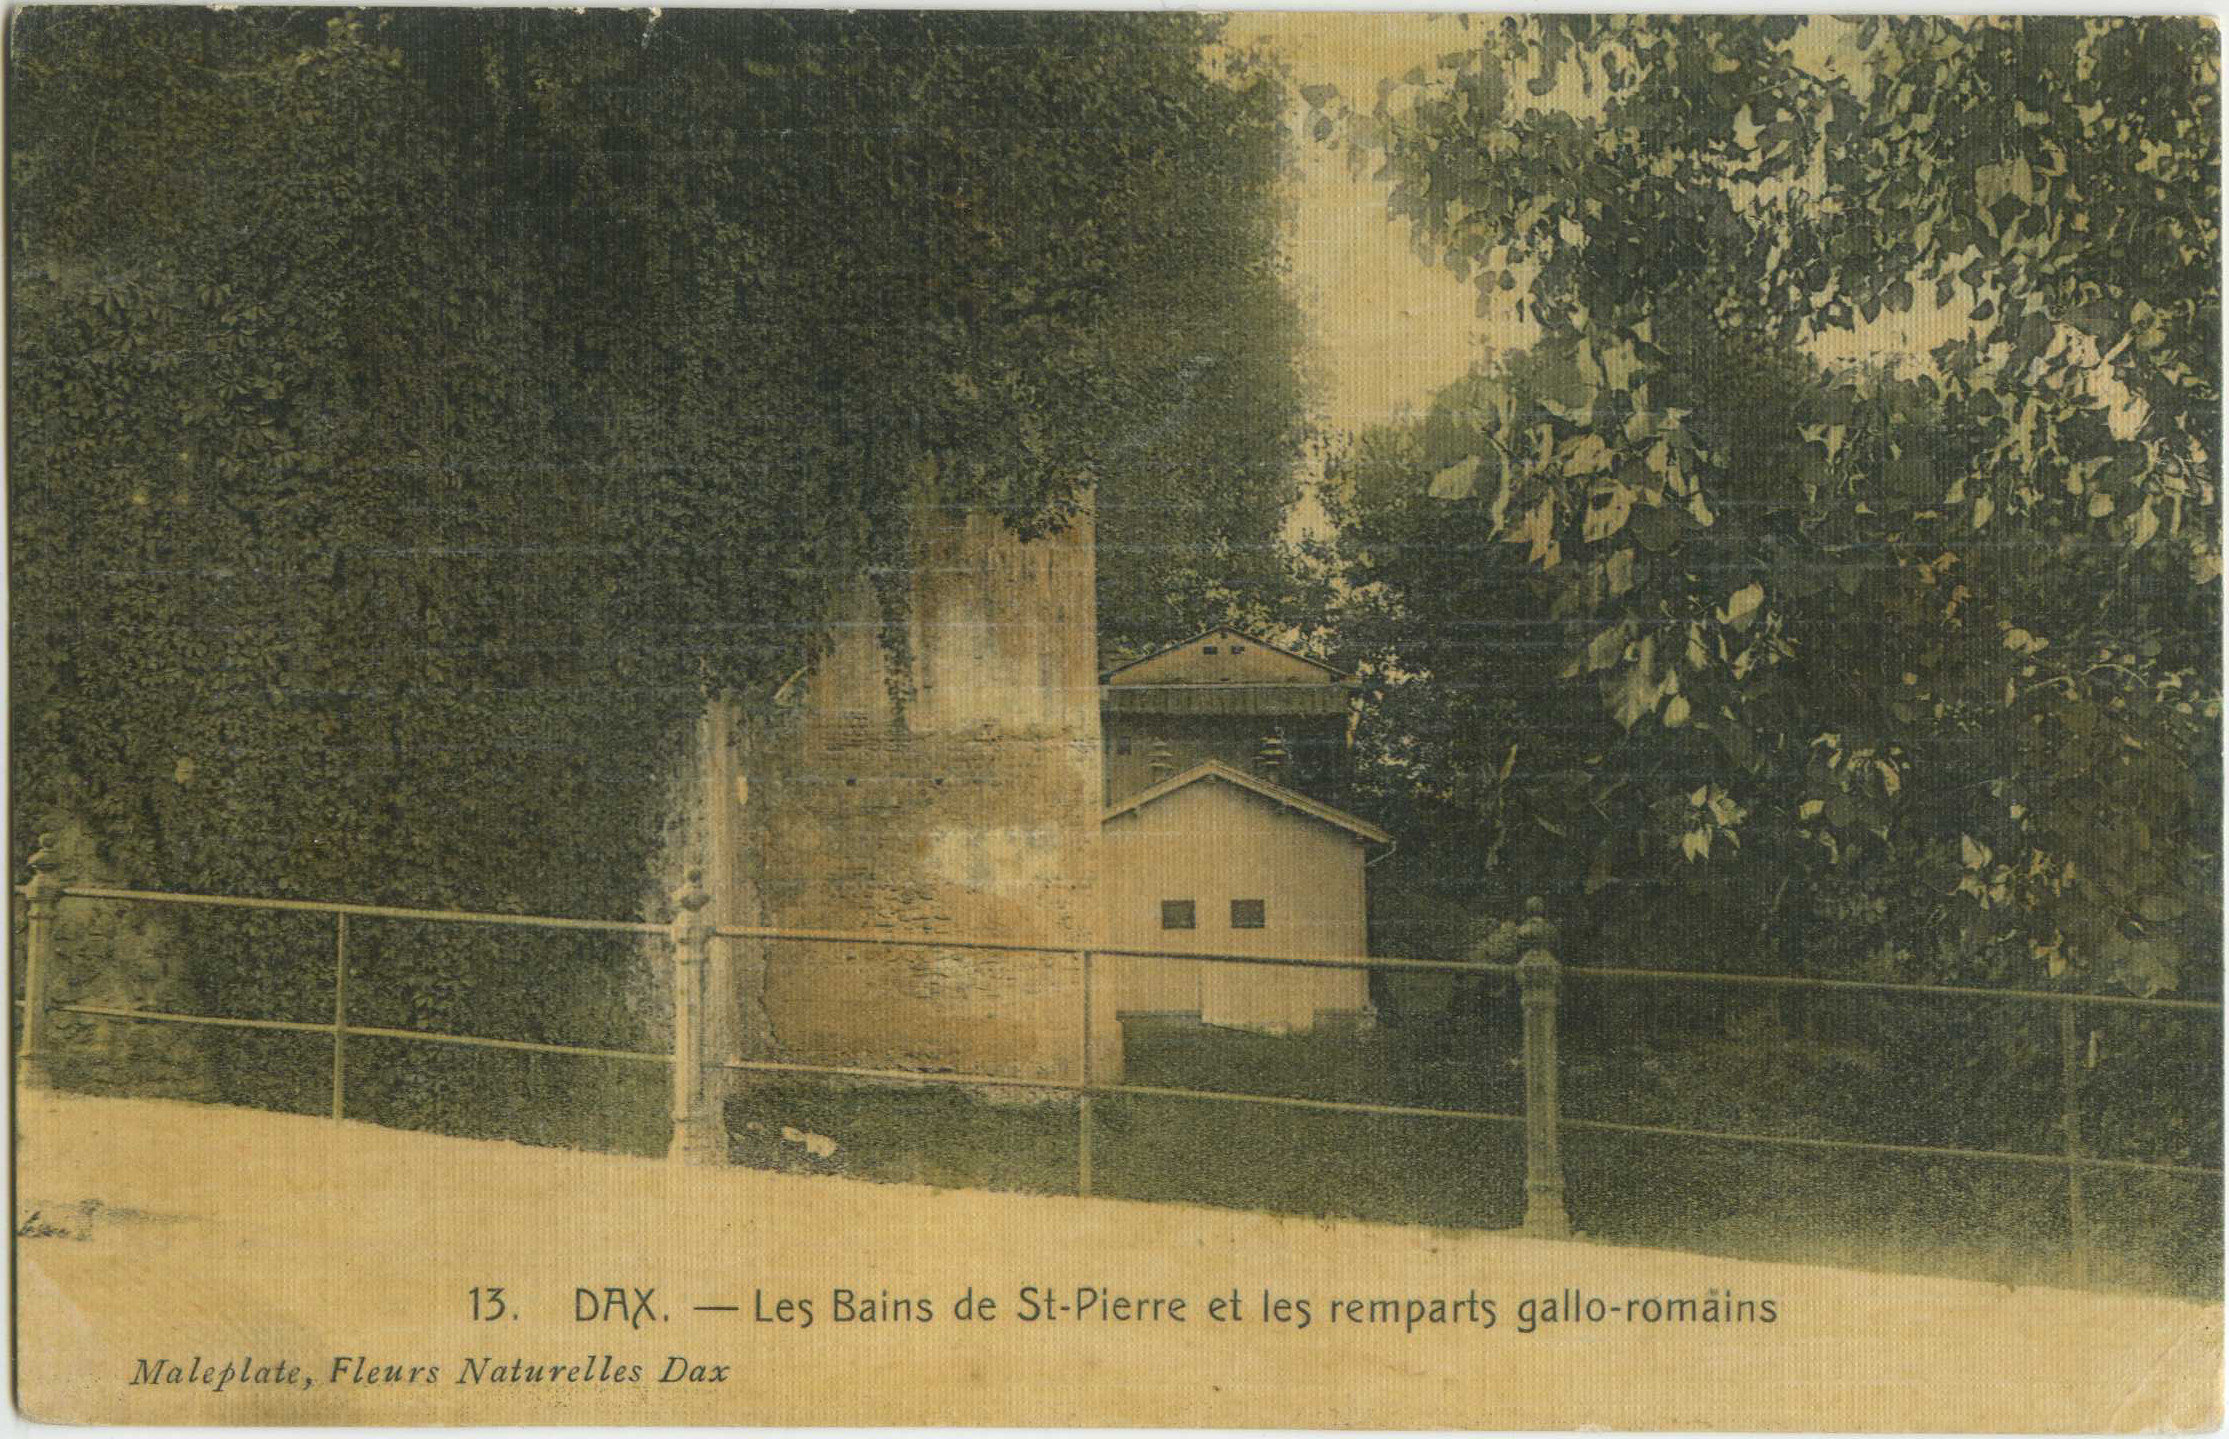 Dax - Les Bains de St-Pierre et les remparts gallo-romains